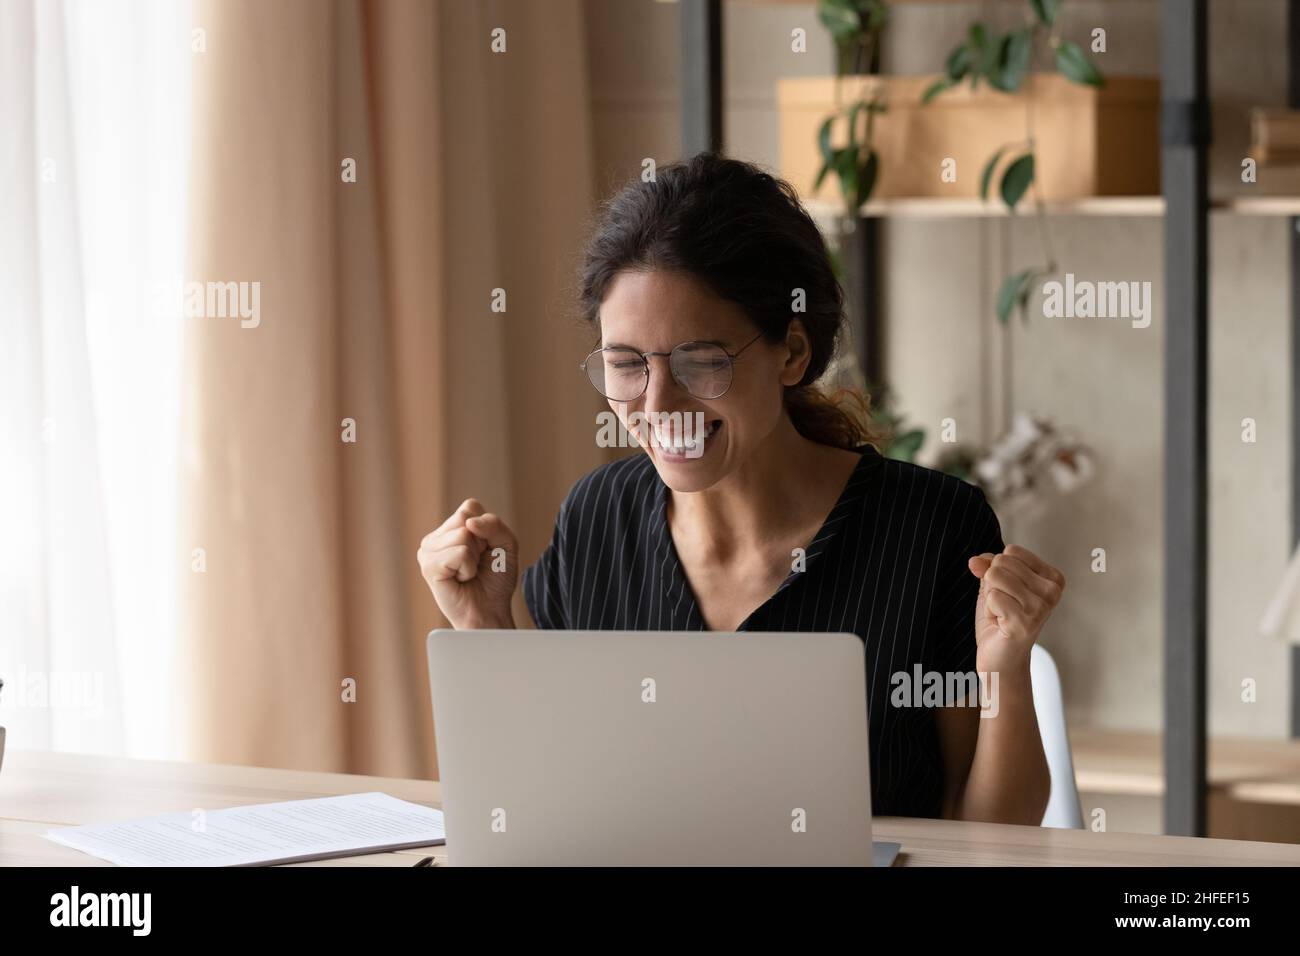 Emotionale, fröhliche junge Frau, die Online-Erfolg feiert. Stockfoto